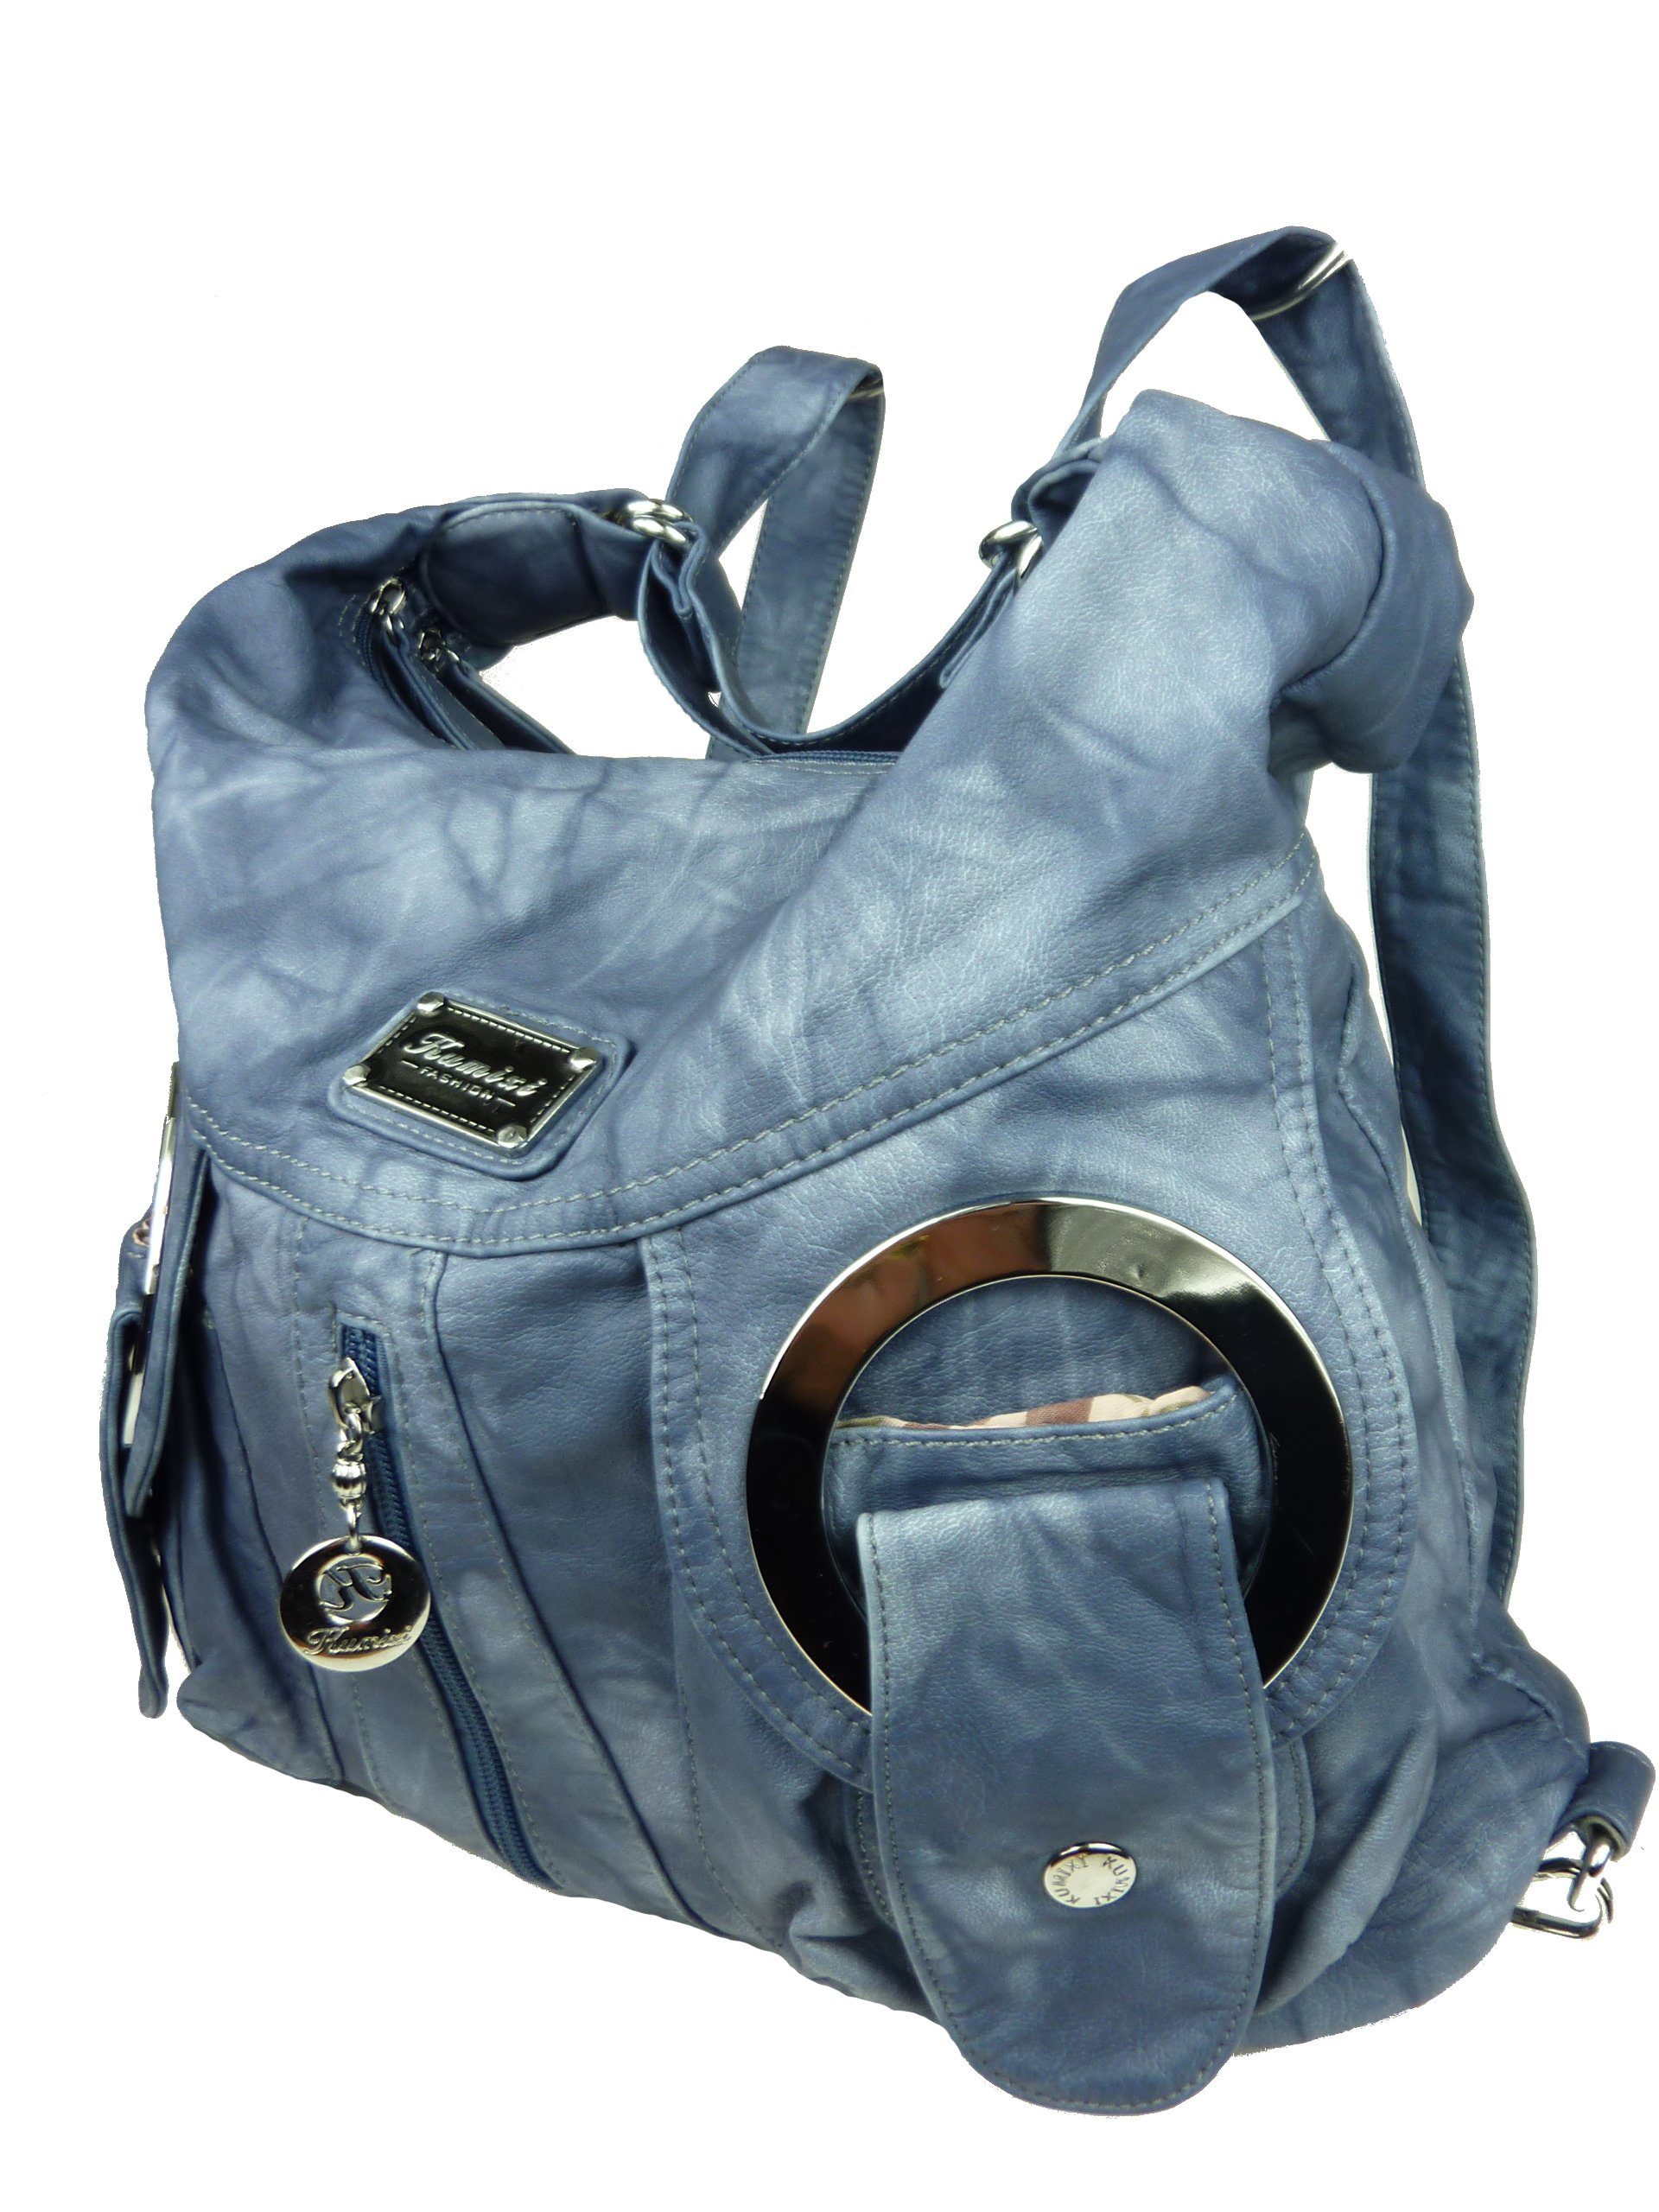 Taschen4life Schultertasche Rucksacktasche W6802 Multifunktionstasche, Tasche oder Rucksack, verstellbarer Schulterriemen, als Schultertasche oder Rucksack tragbar jeans blau | Schultertaschen